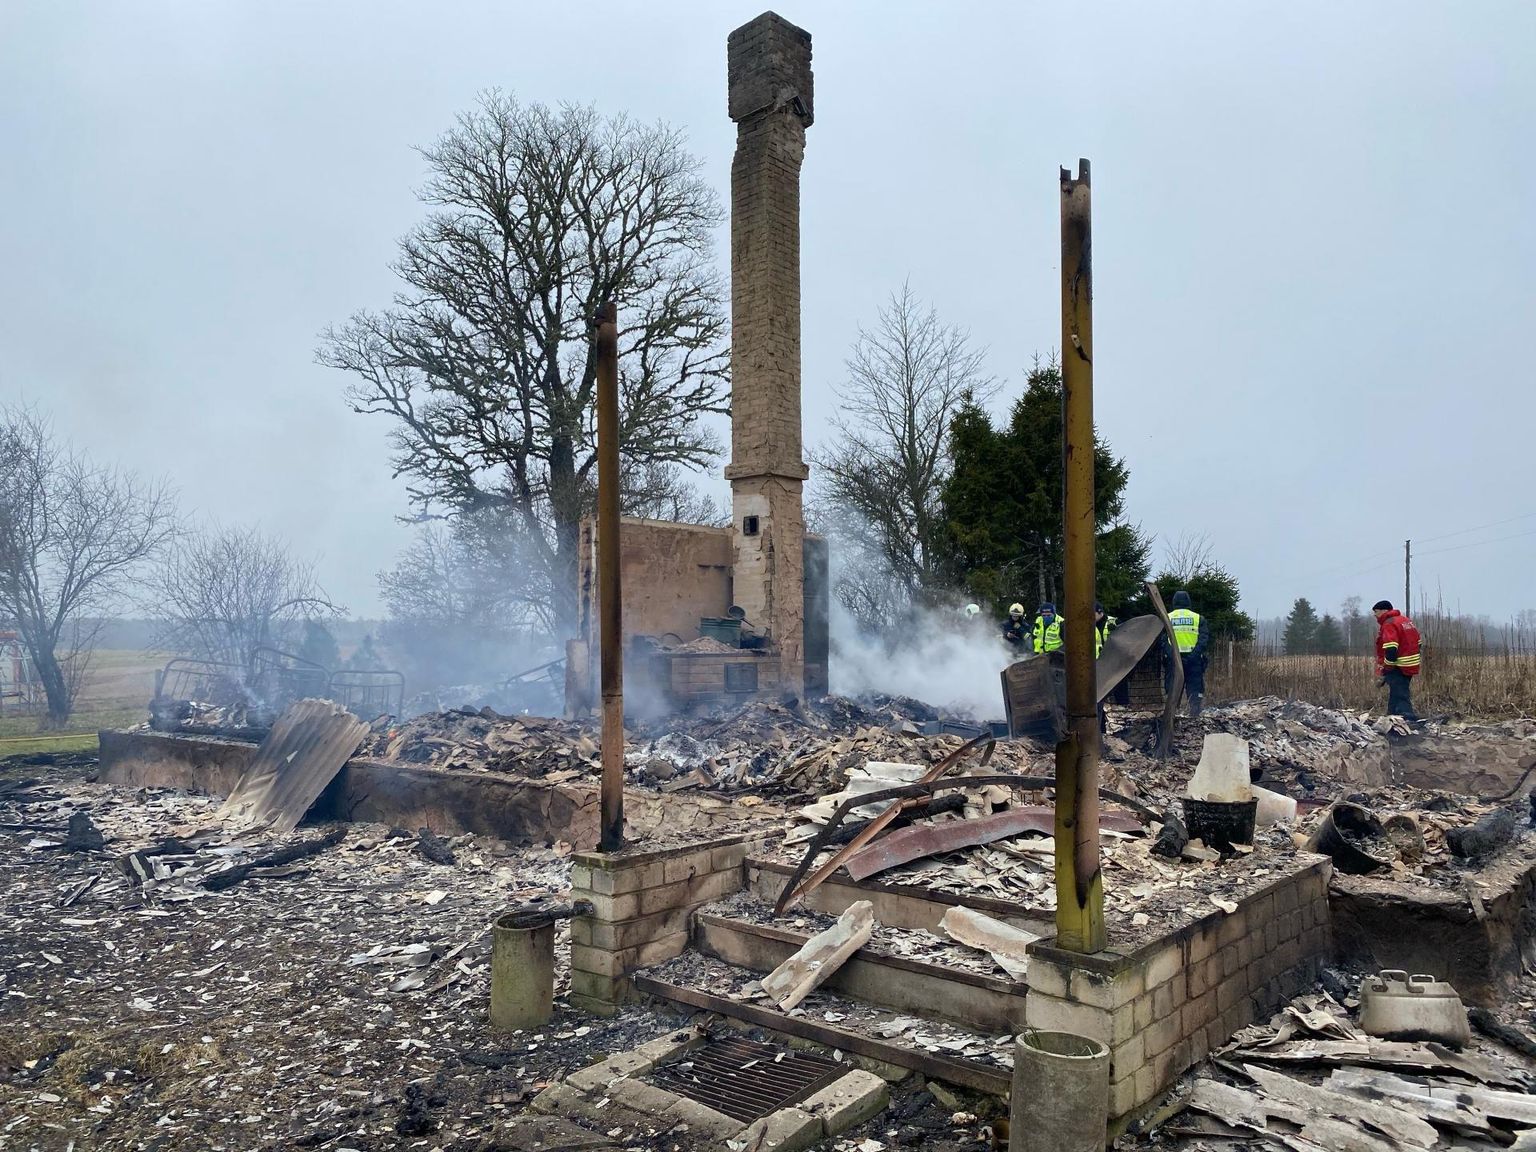 Aprilli alguses Järva vallas Vaali külas põlenud majast jäi järele üksnes korsten. Tules kaotas elu ka majas elanud naine.